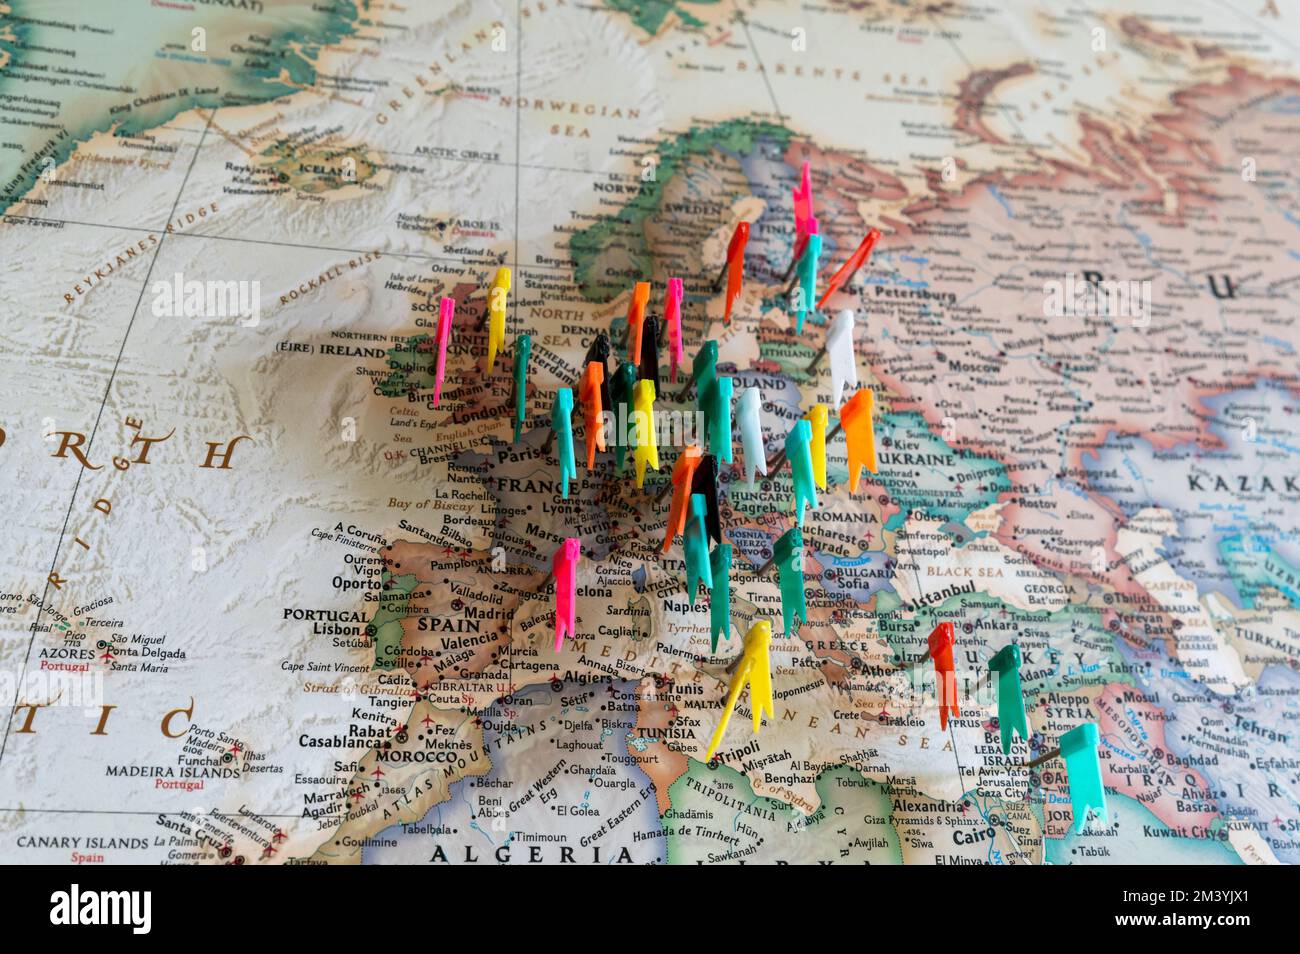 Chinchetas de colores en el mapa del mundo - concepto de viaje Fotografía  de stock - Alamy